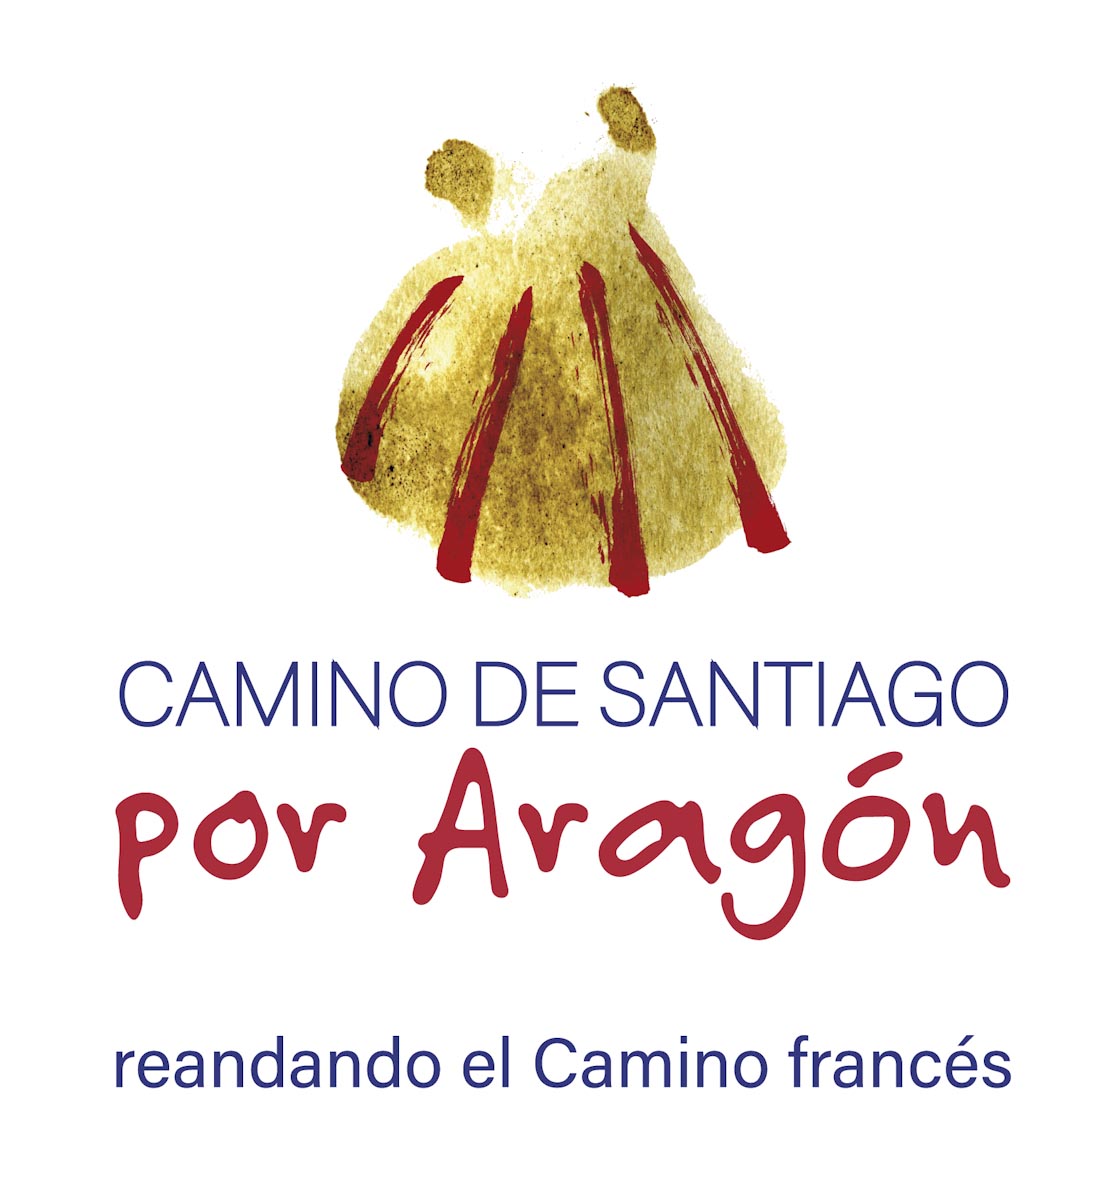 Marca Camino de Santiago francés por Aragón